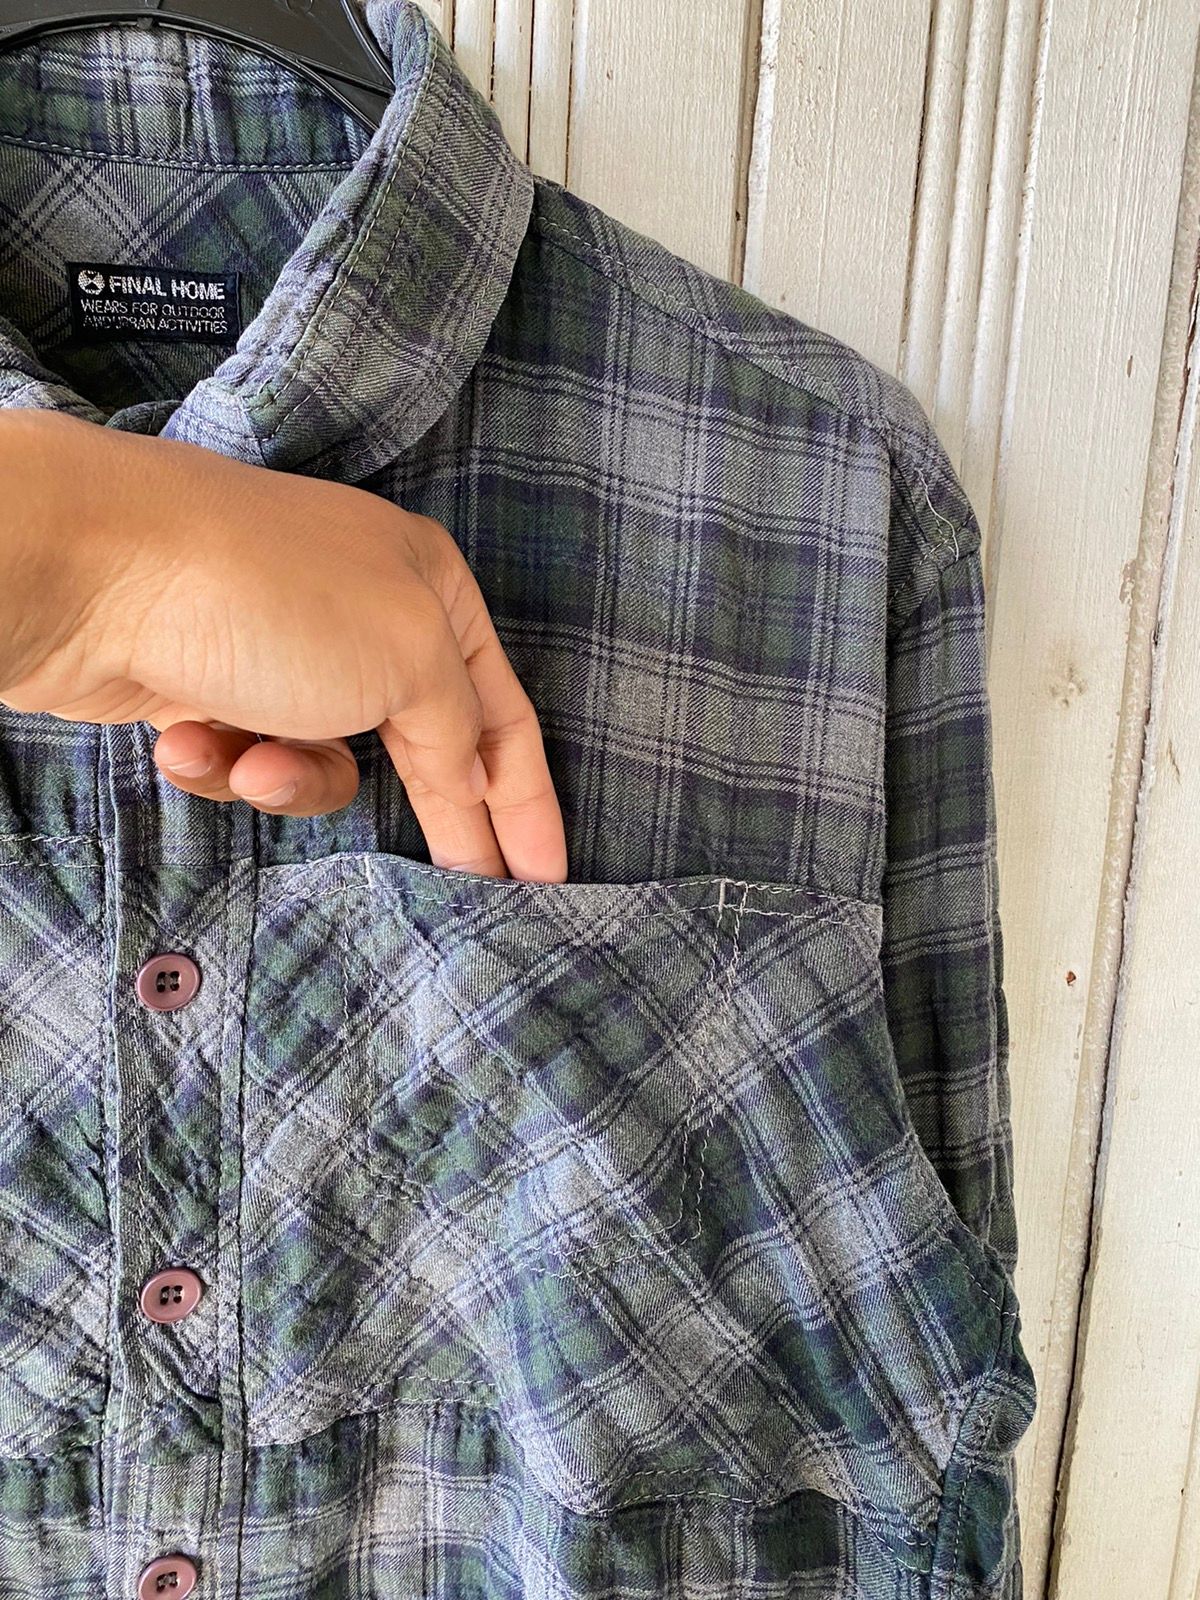 Vintage Vintage Final Home Flannel Shirt Button Ups Size US S / EU 44-46 / 1 - 8 Thumbnail